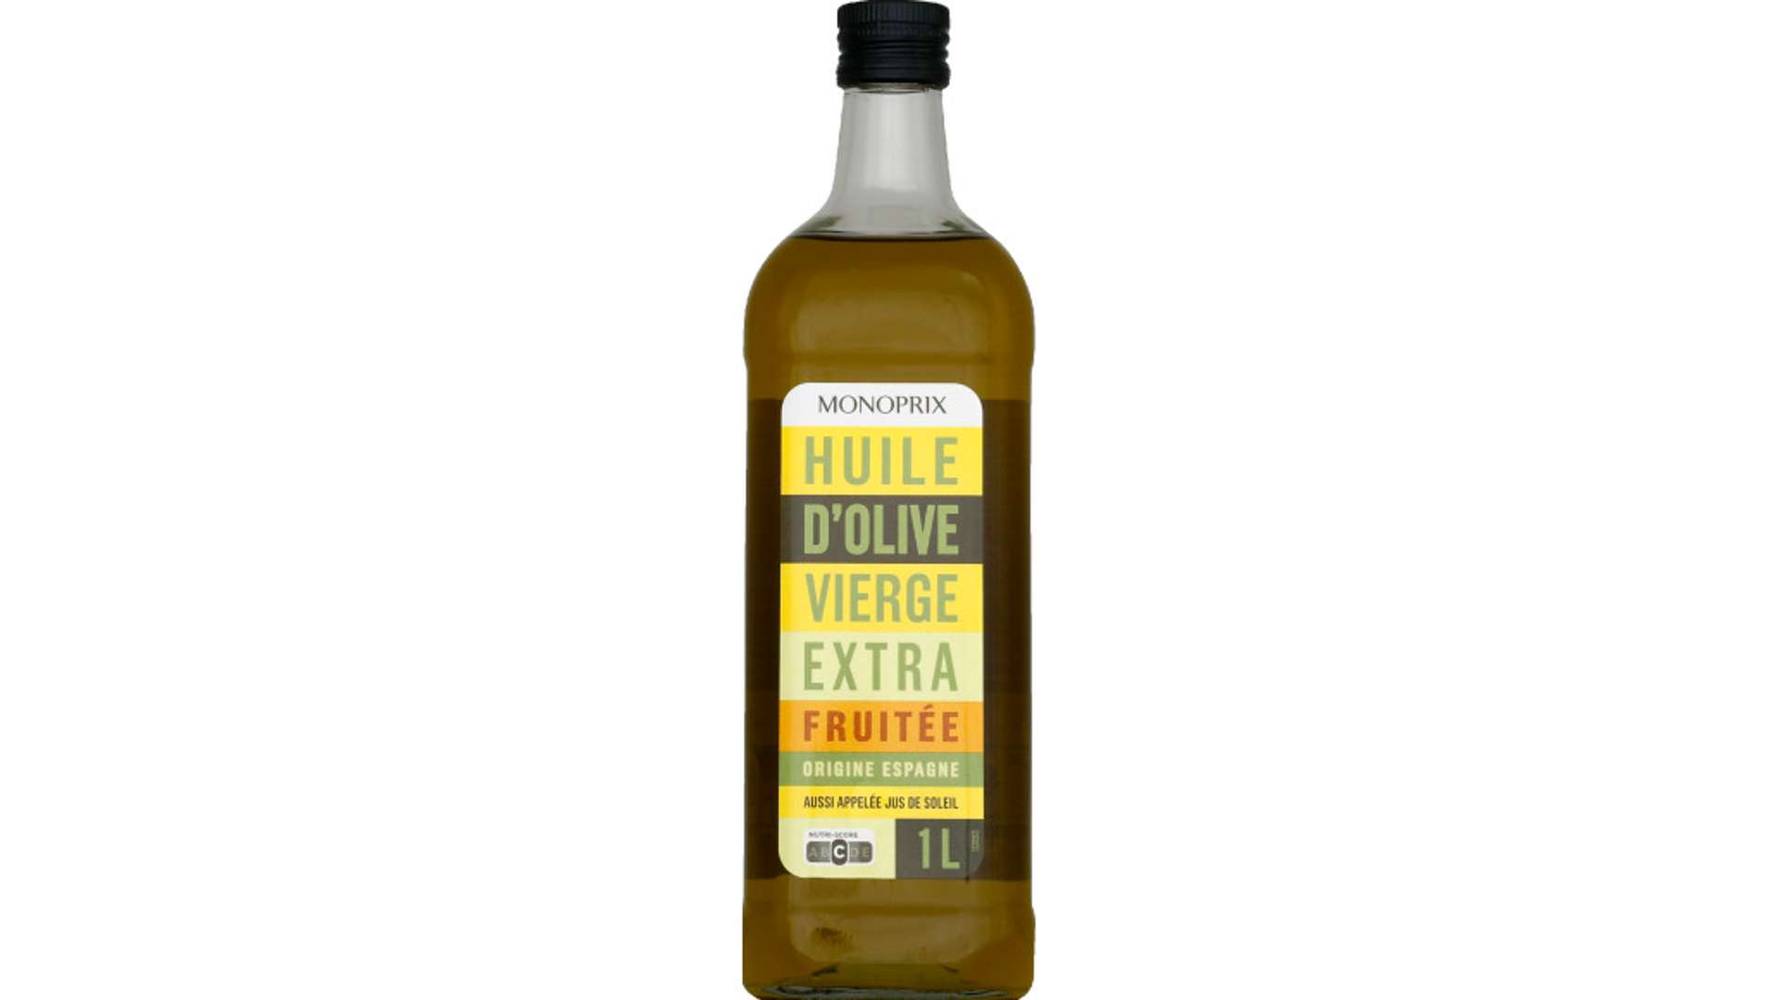 Monoprix Huile d'olive vierge extra fruitée La bouteille de 1L